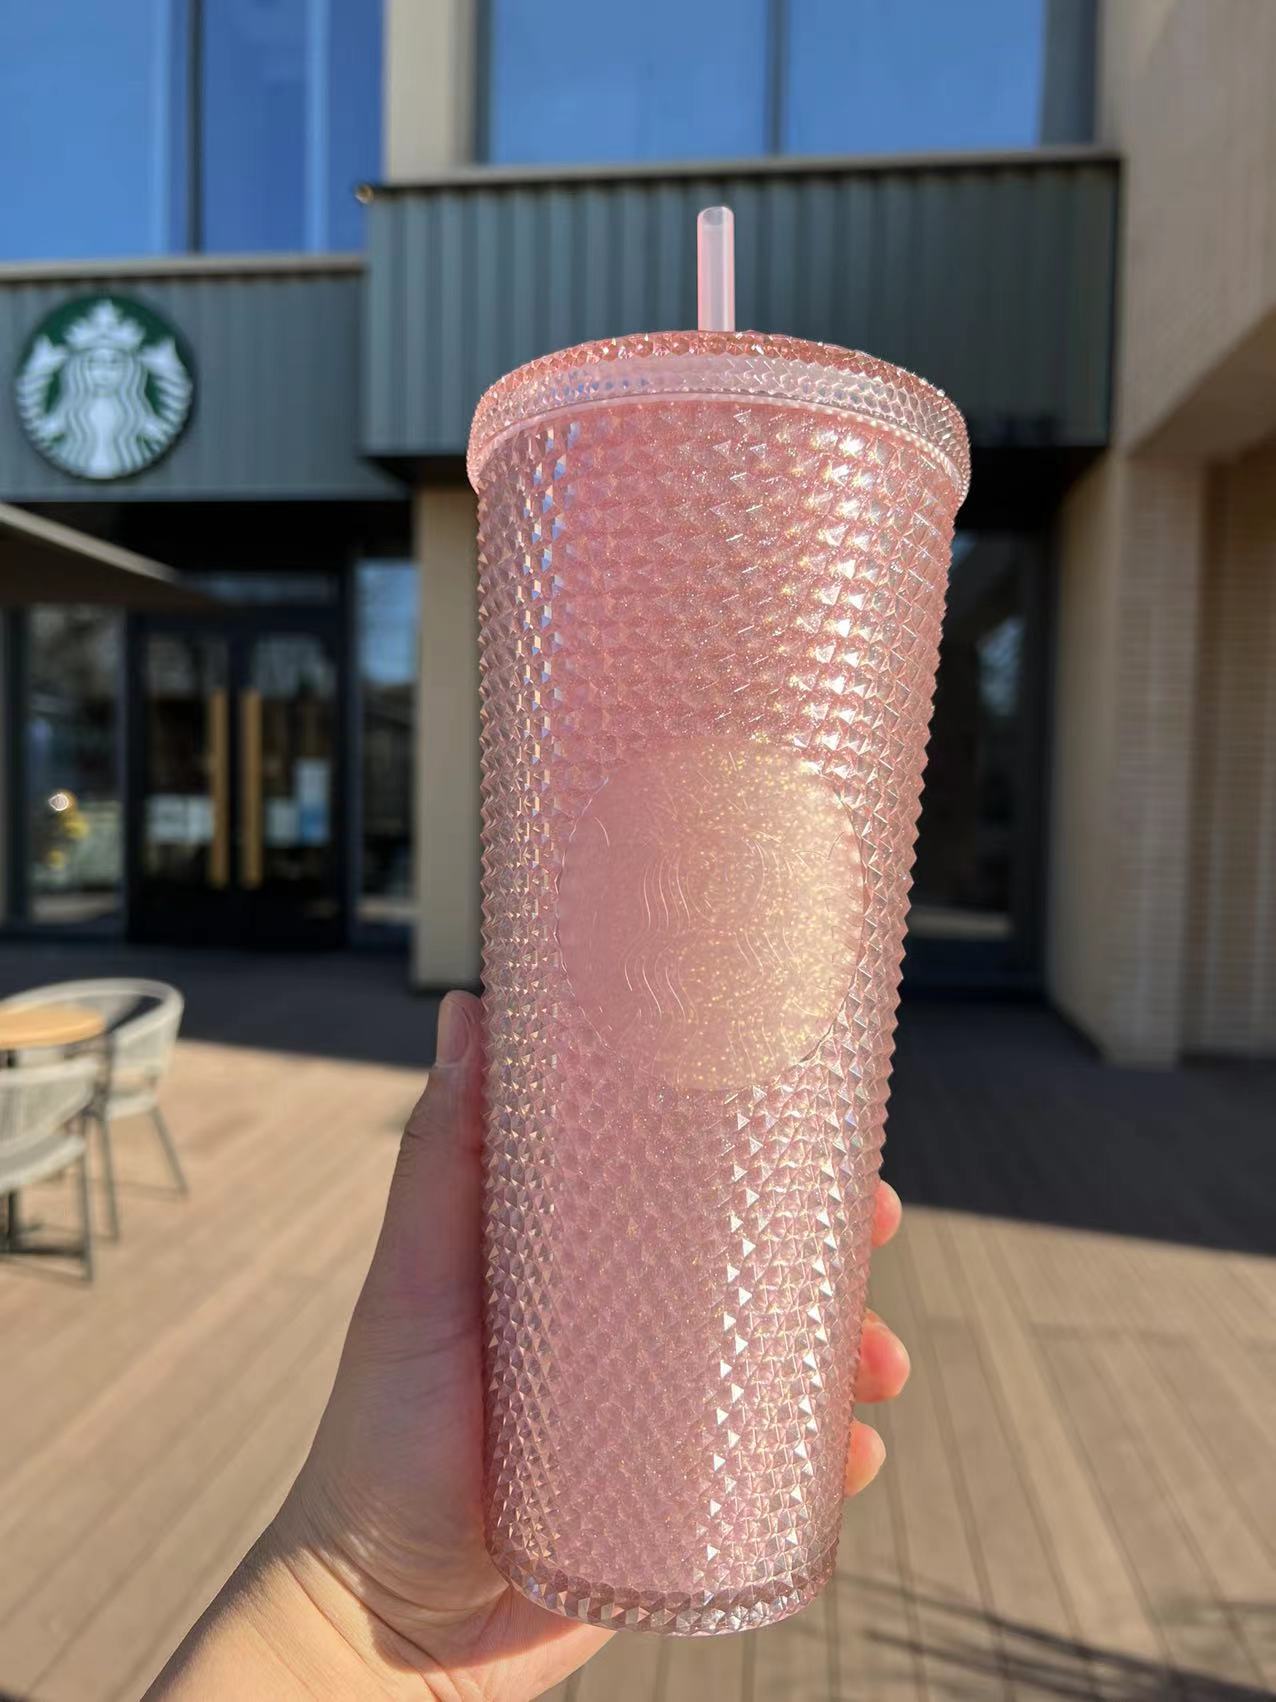 Starbucks Studded Rose Gold Tumbler